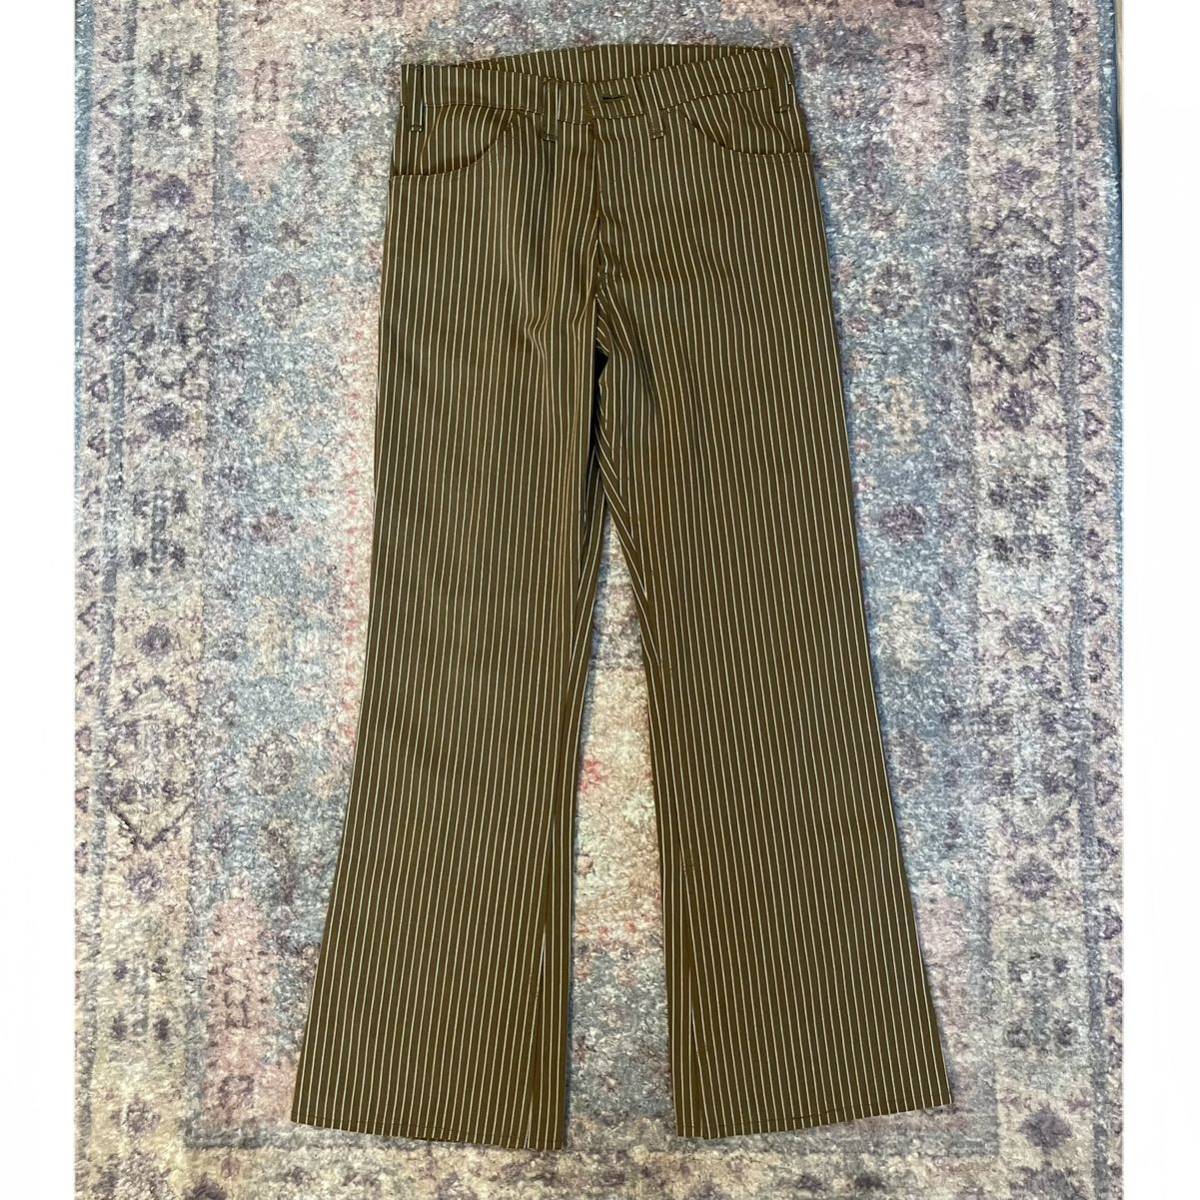 70s LEVIS STA-PREST Vintage Flared Pants リーバイス スタプレ フレア パンツ ワイド スラックス ヴィンテージ ビンテージ ストライプ_画像1